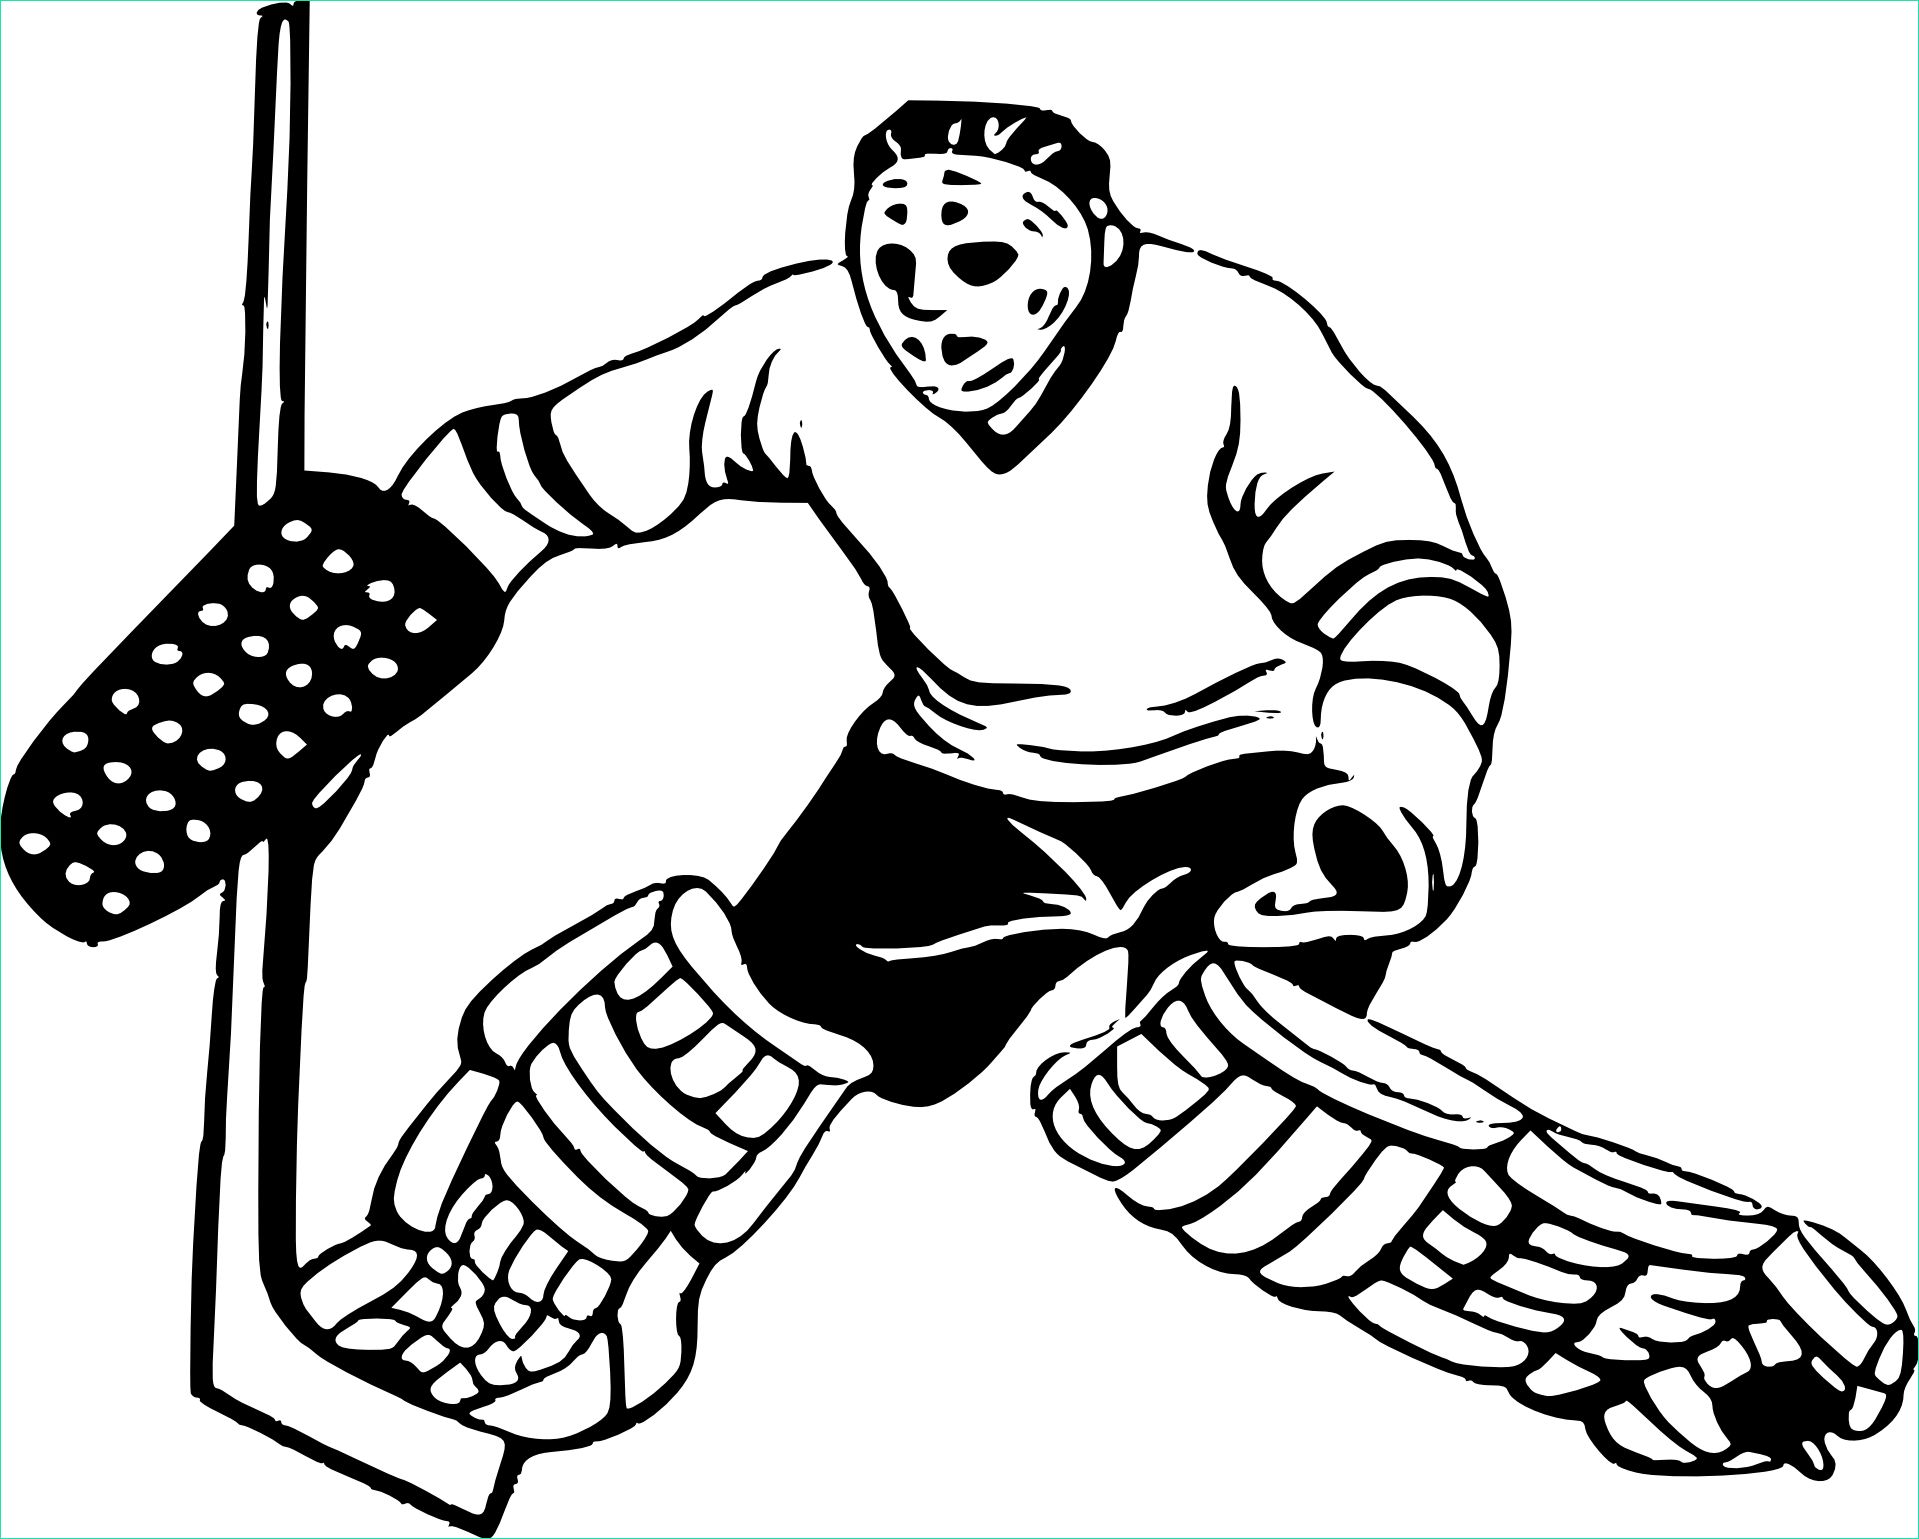 Coloriage Hockey Beau Stock Coloriage Joueur De Hockey à Imprimer Sur Coloriages Fo